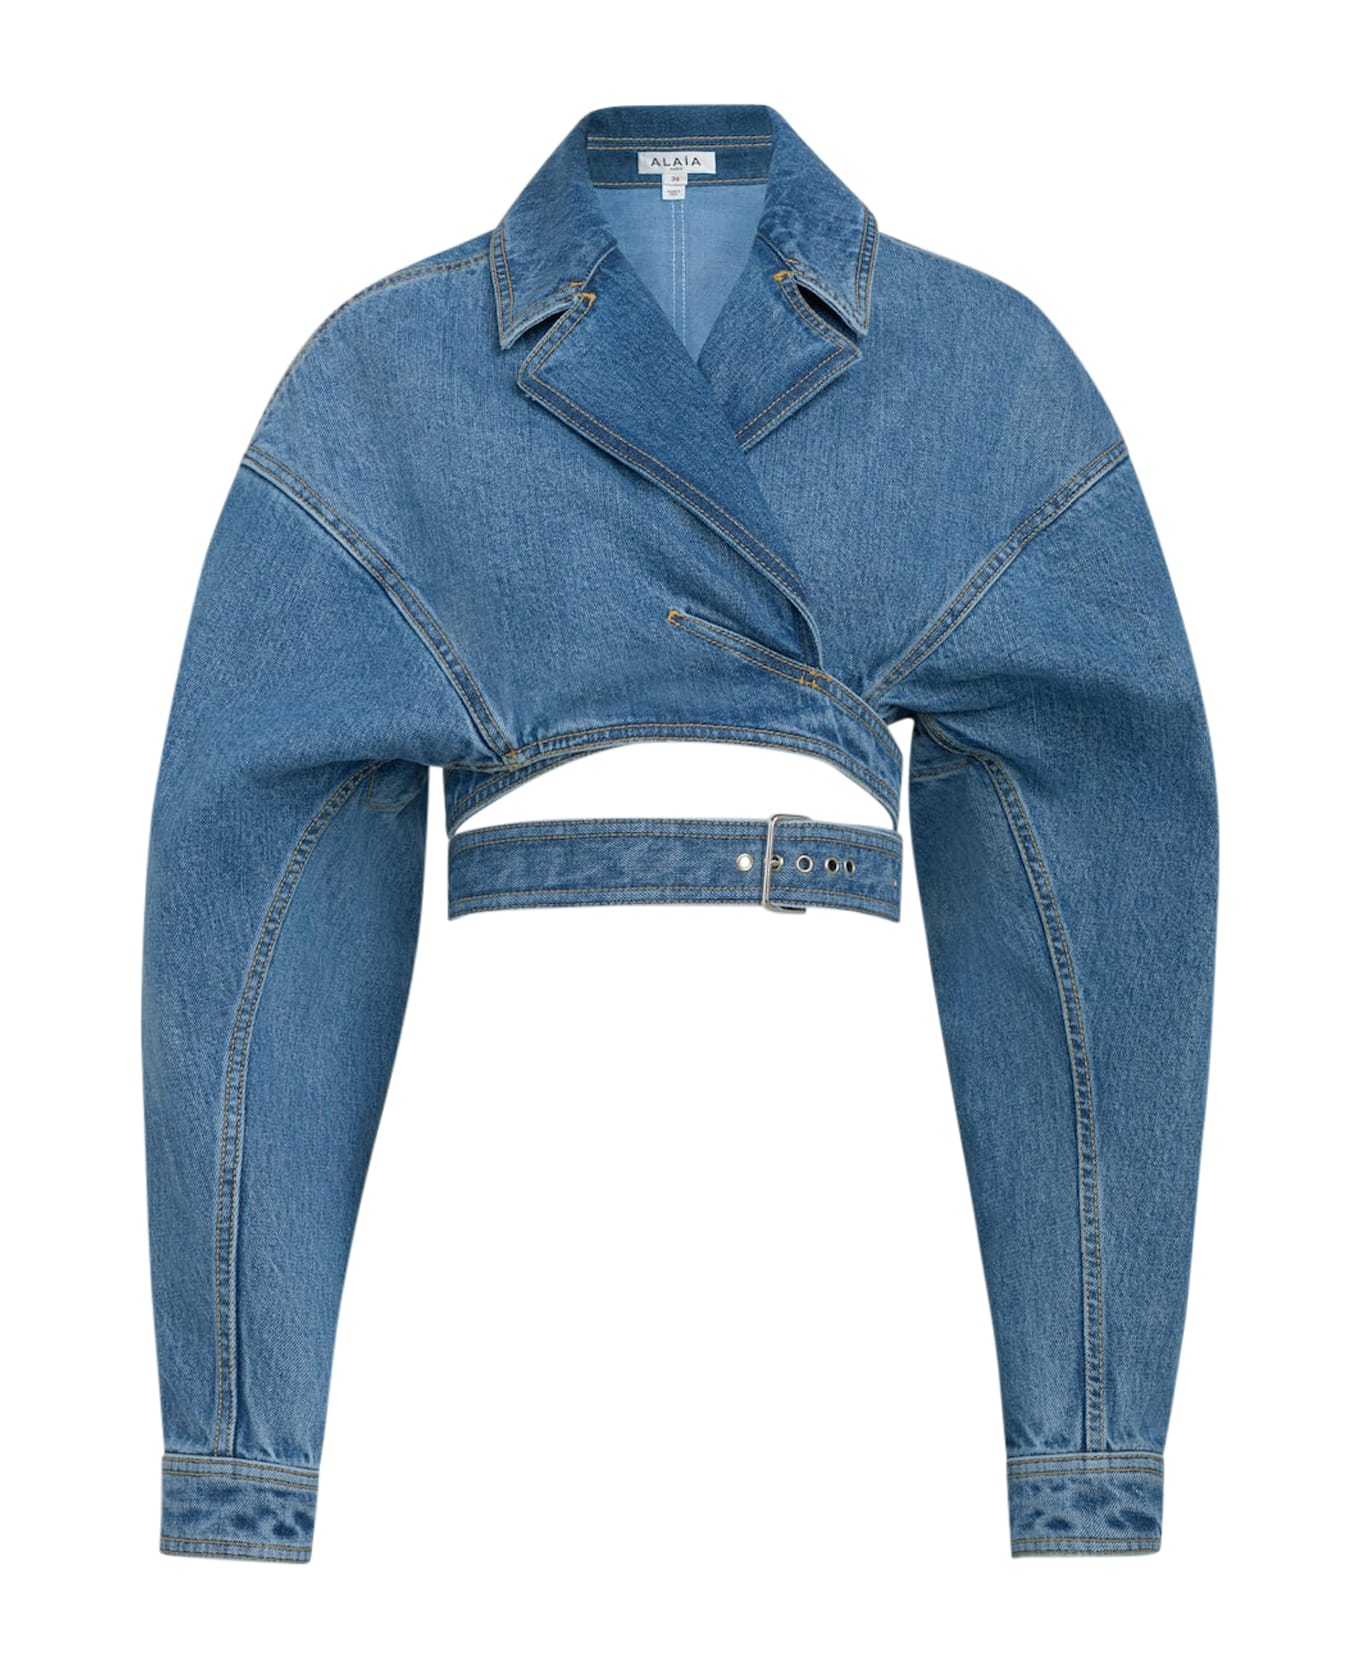 Alaia Crossover Jackt - Bleu Vintage